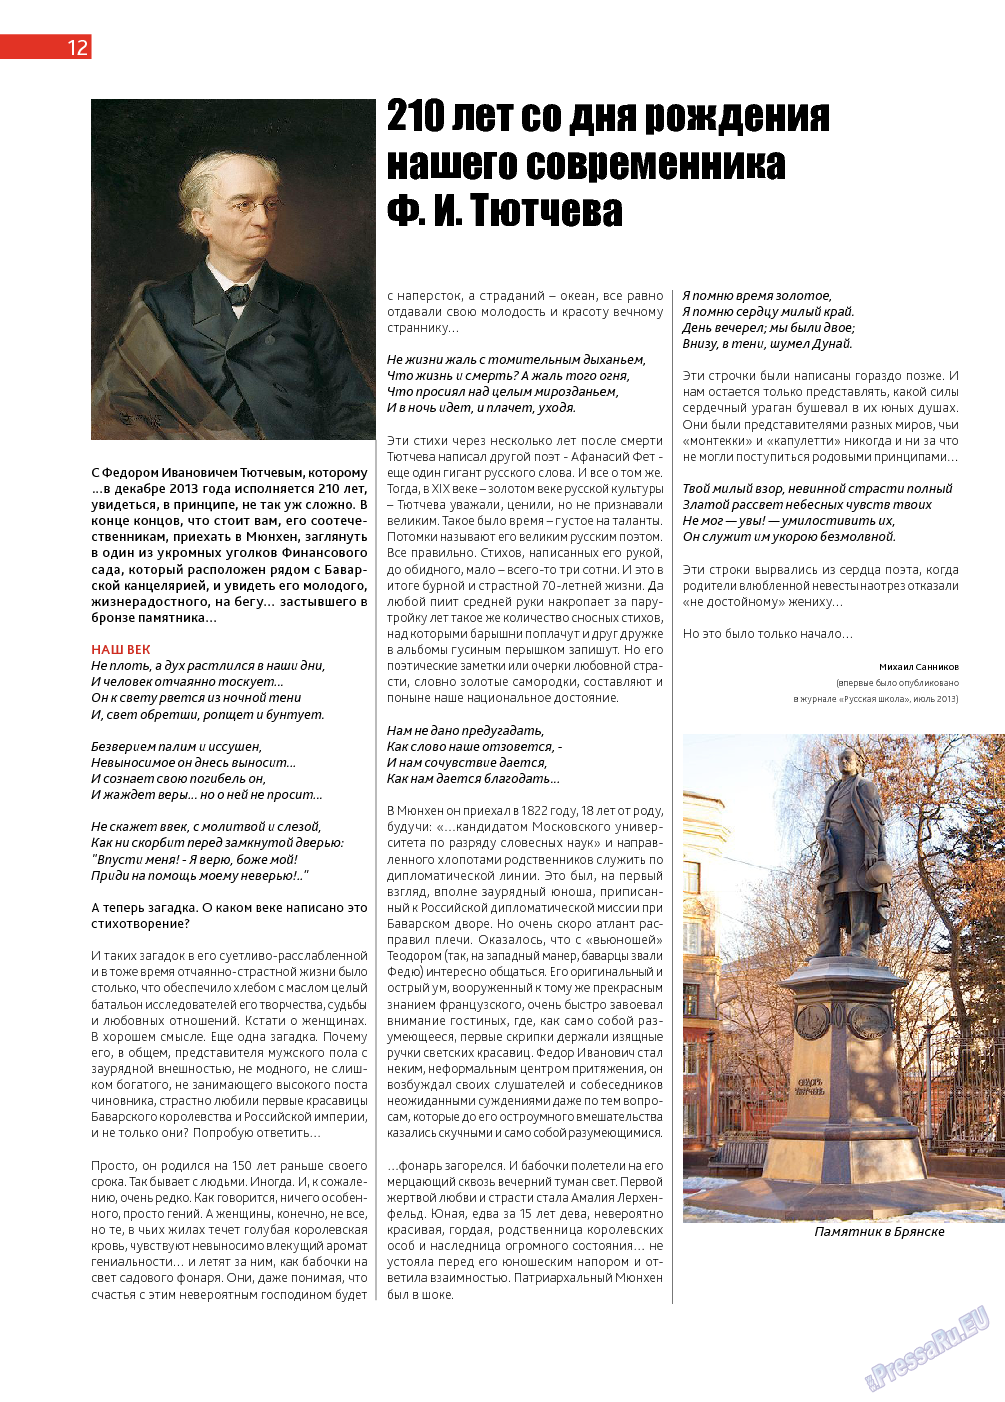 Афиша Augsburg (журнал). 2013 год, номер 11, стр. 12